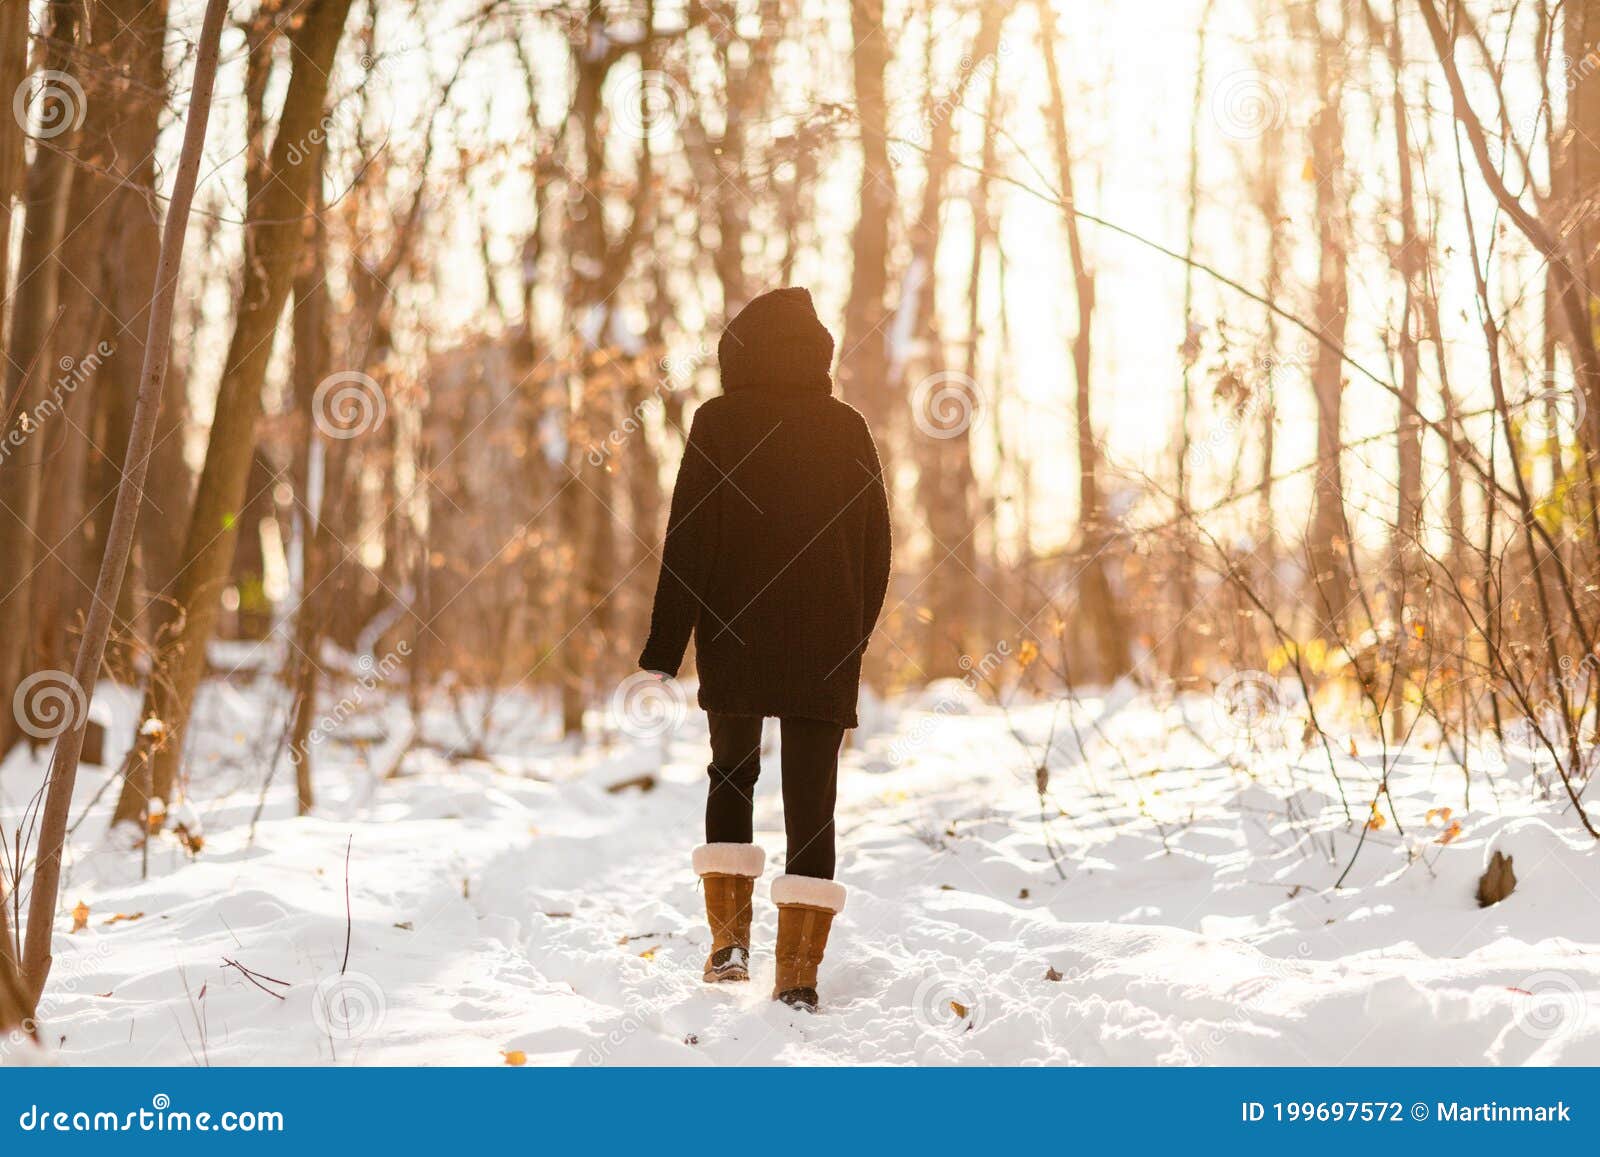 Mulher que caminha na neve do inverno caminhando na floresta nevada na floresta trilhando pessoas ativas no estilo de vida ao ar